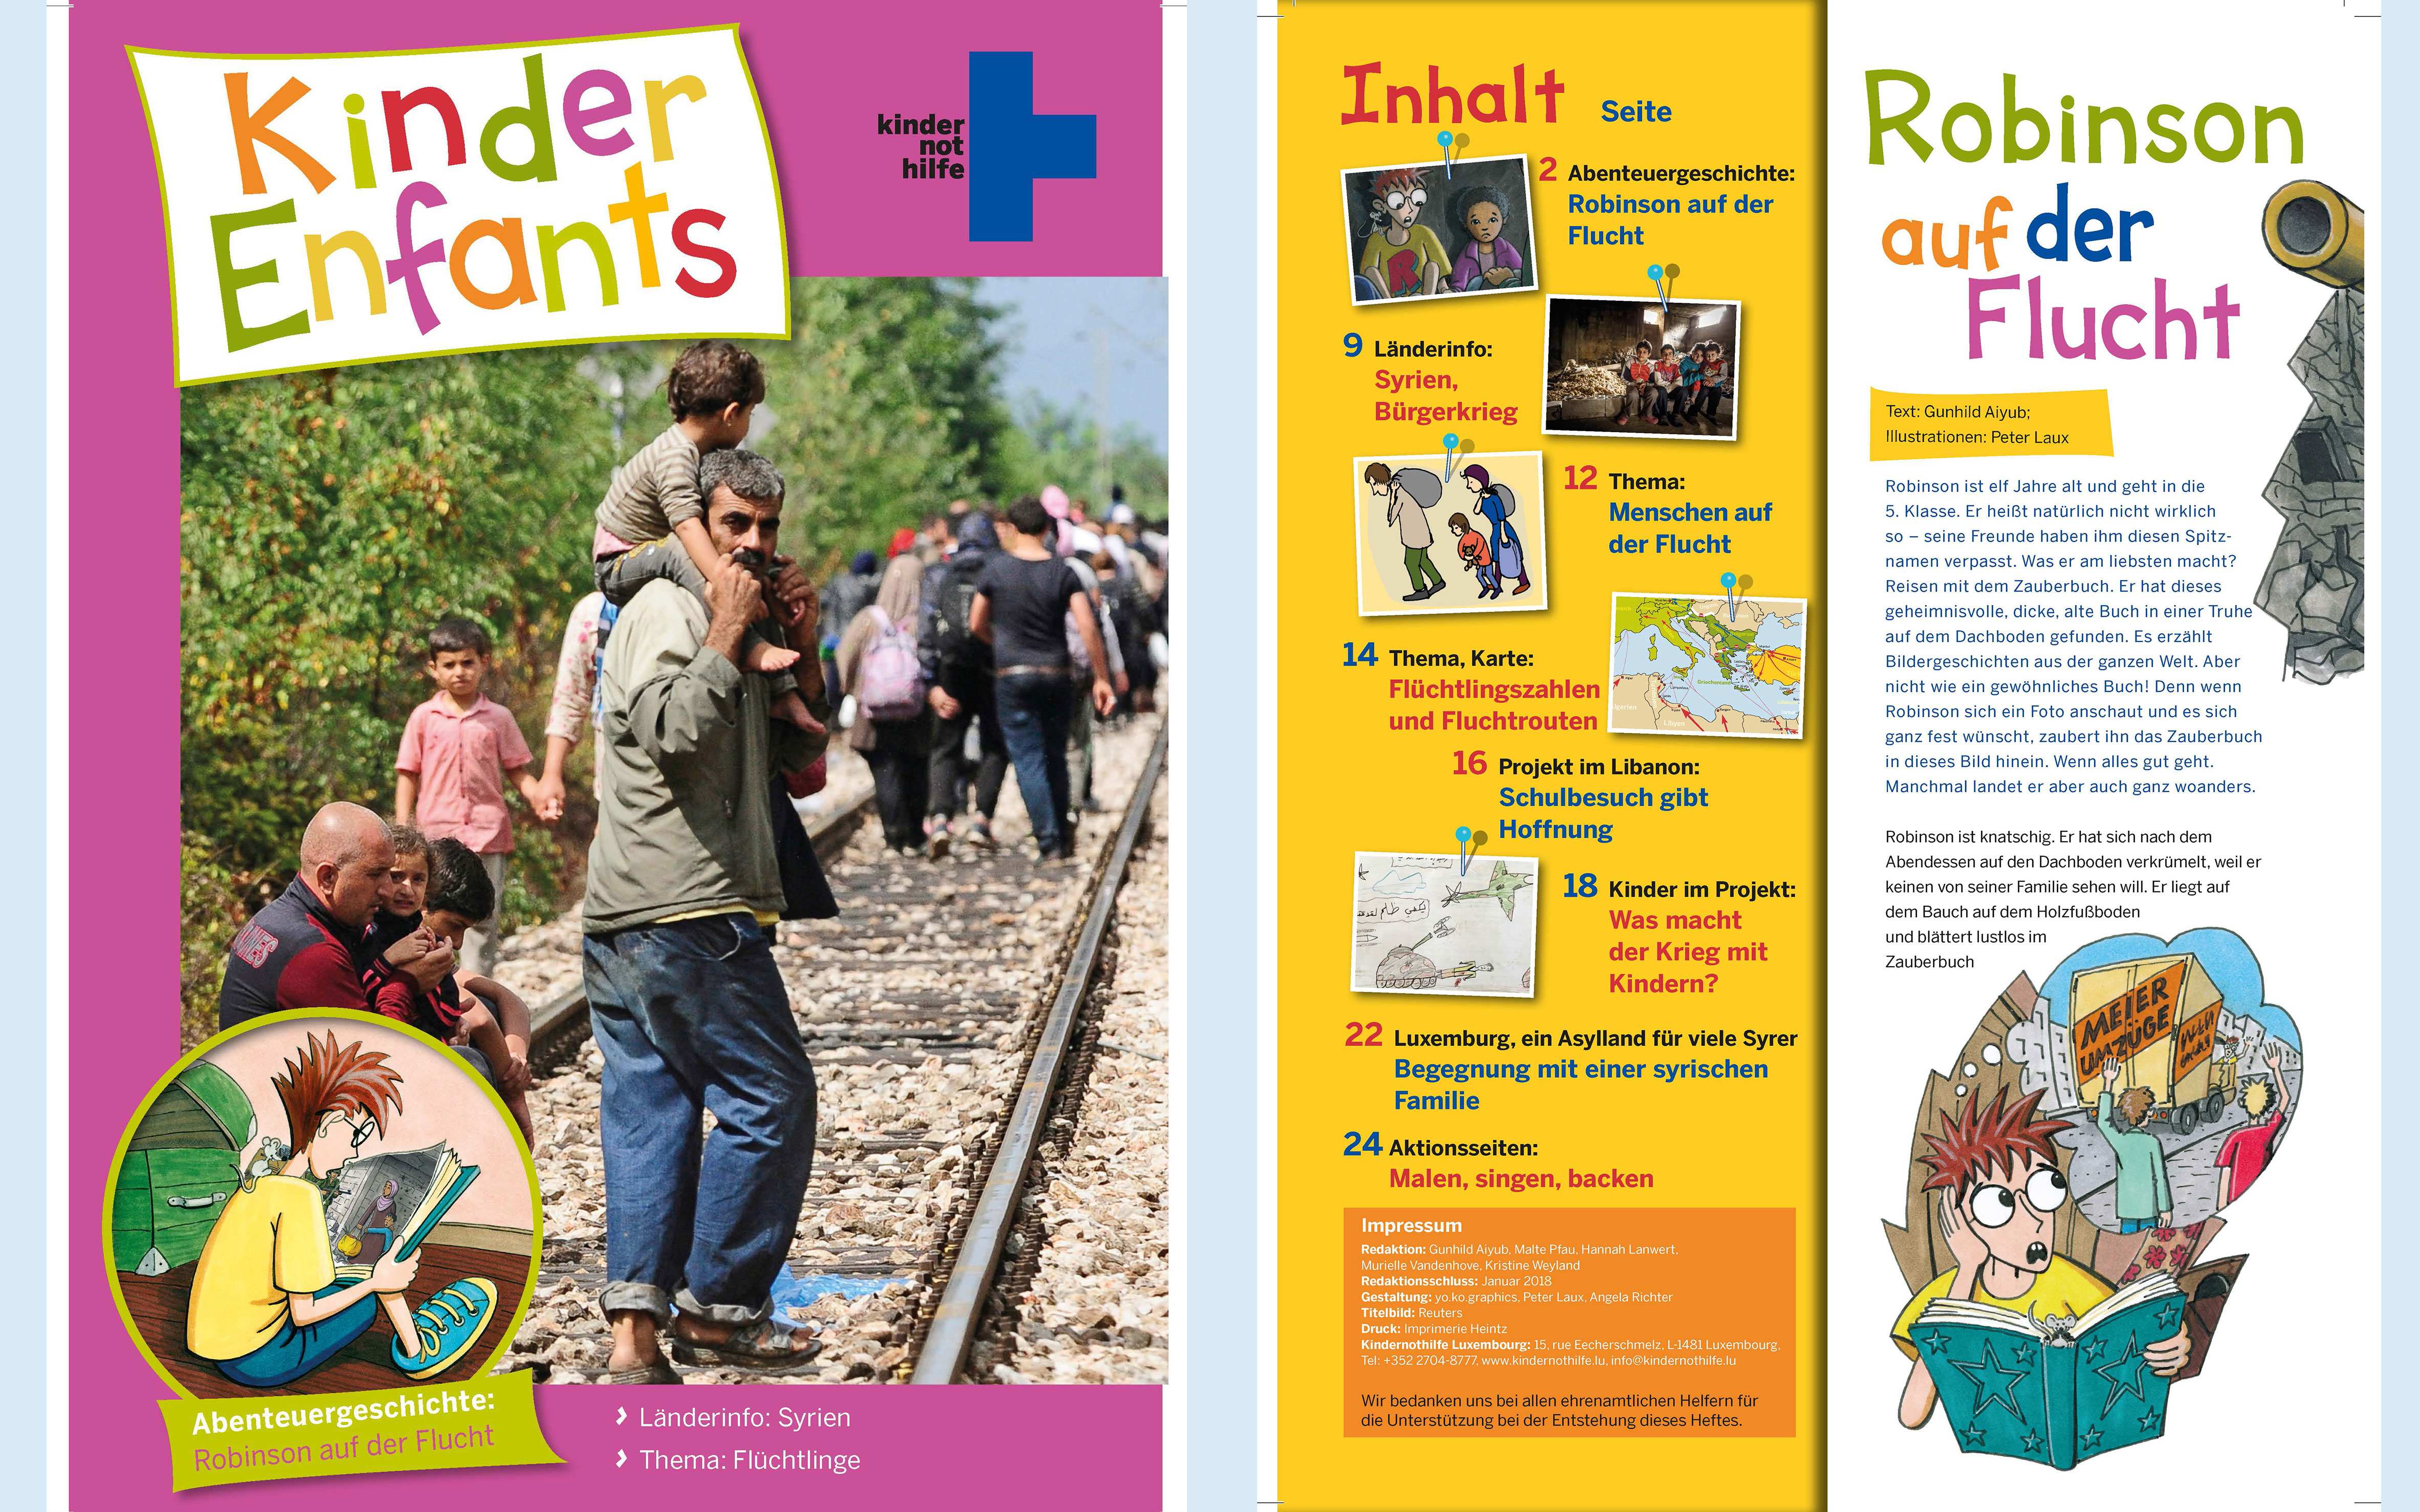 KNH Luxembourg Material: Kinder-Enfants-Heft Flucht